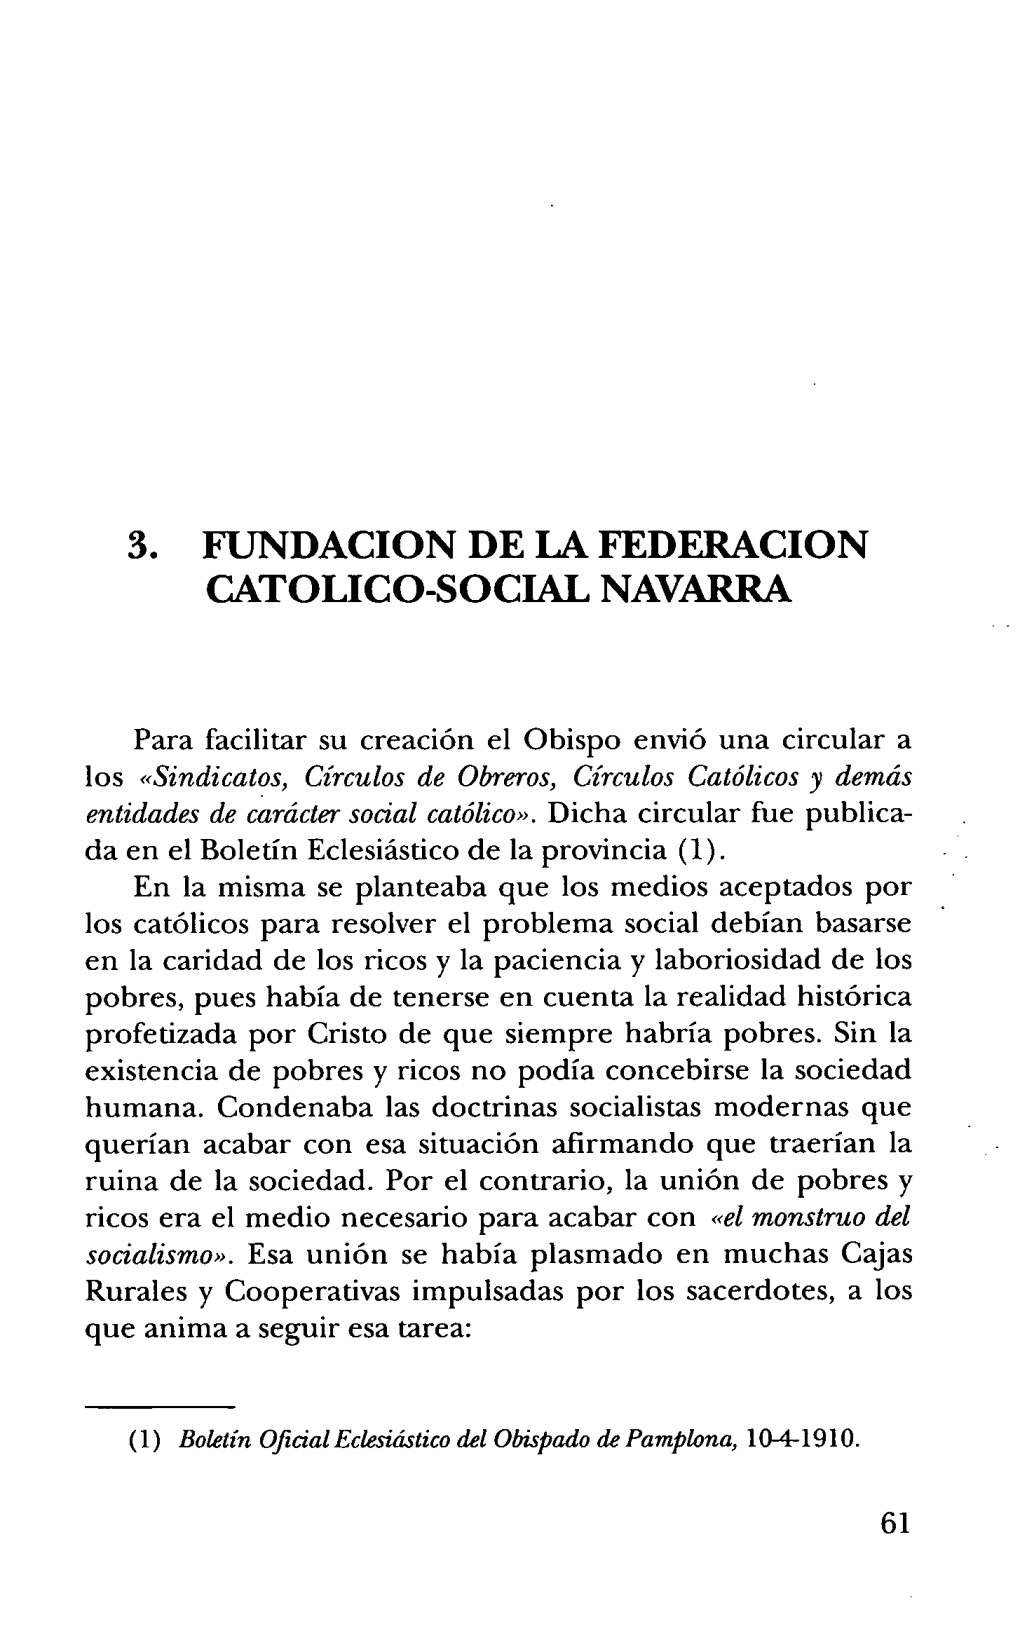 3. Fundacion De La Federacion Catolico-Social Navarra